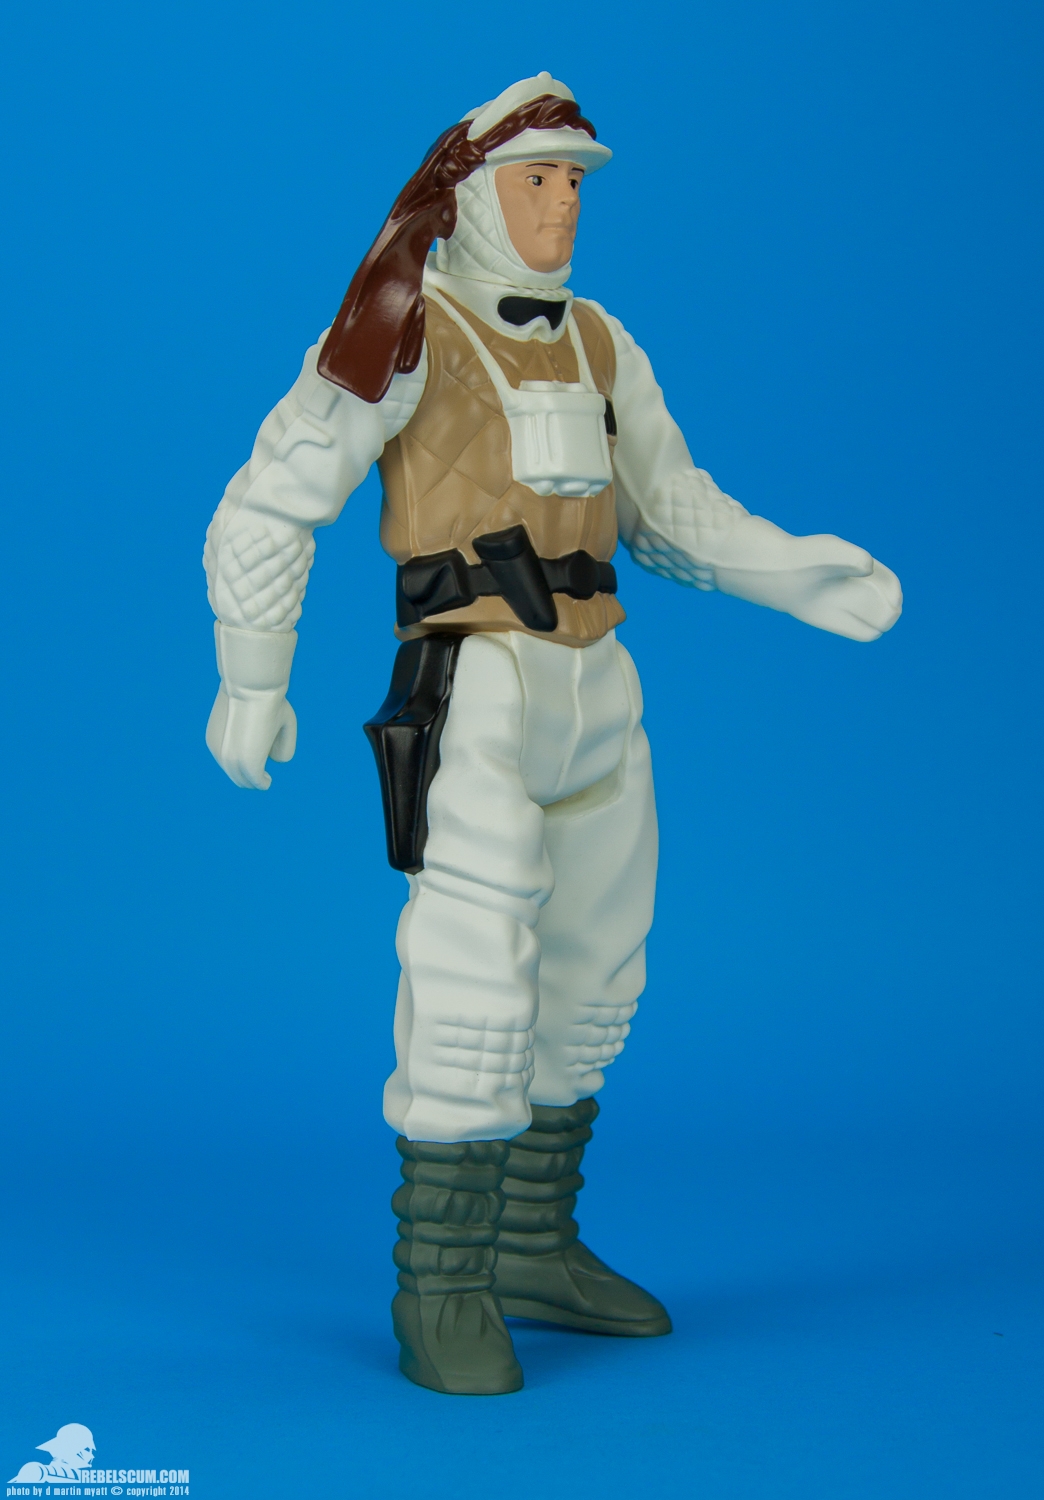 Luke-Skywalker-Hoth-Battle-Gear-Gentle-Giant-Ltd-Jumbo-Kenner-002.jpg